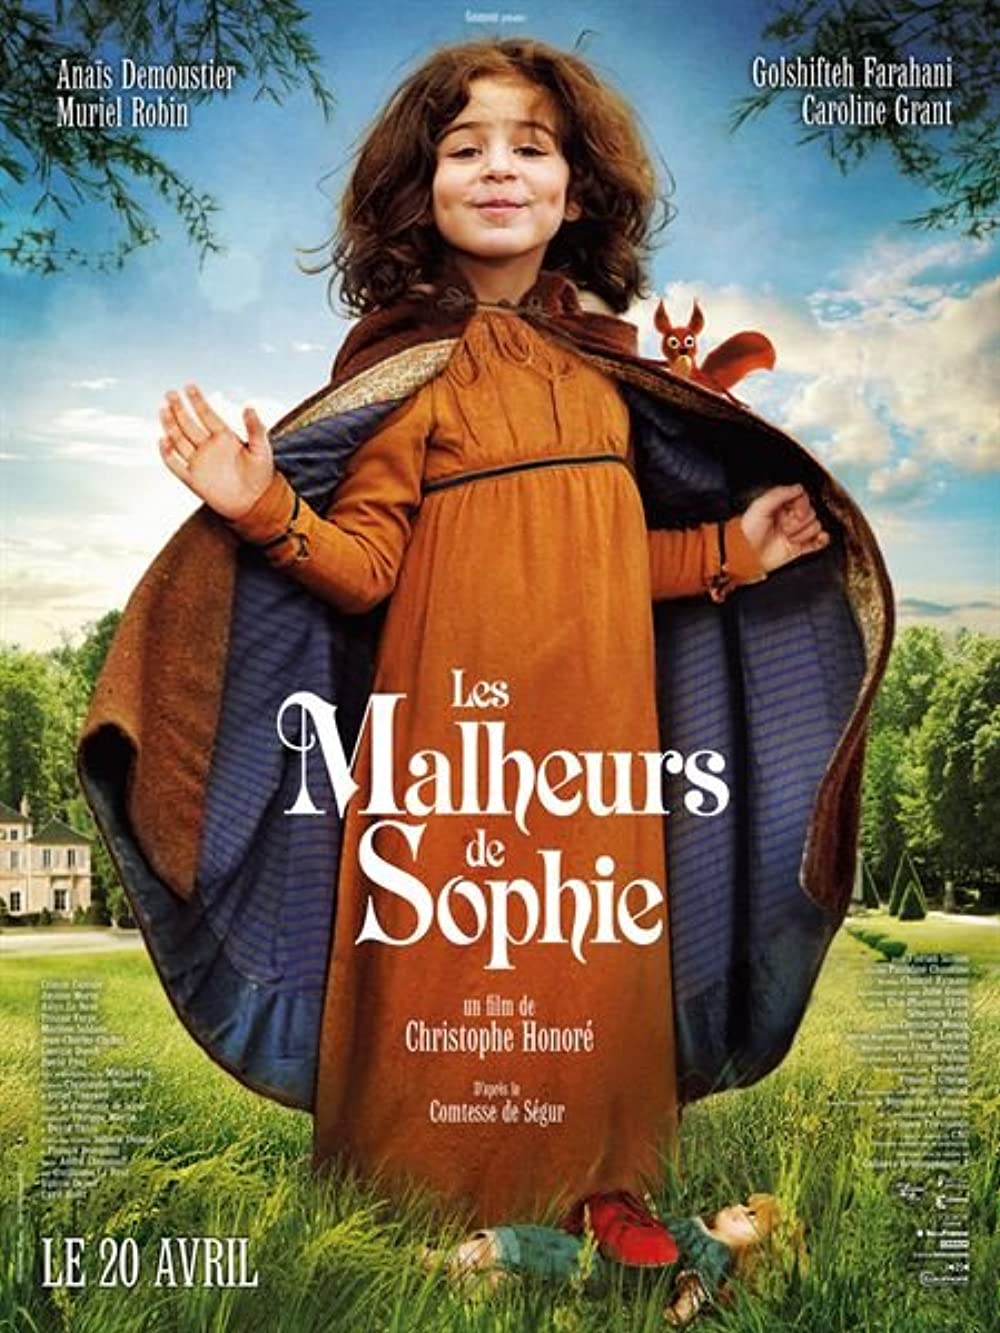 Filmbeschreibung zu Les Malheurs de Sophie